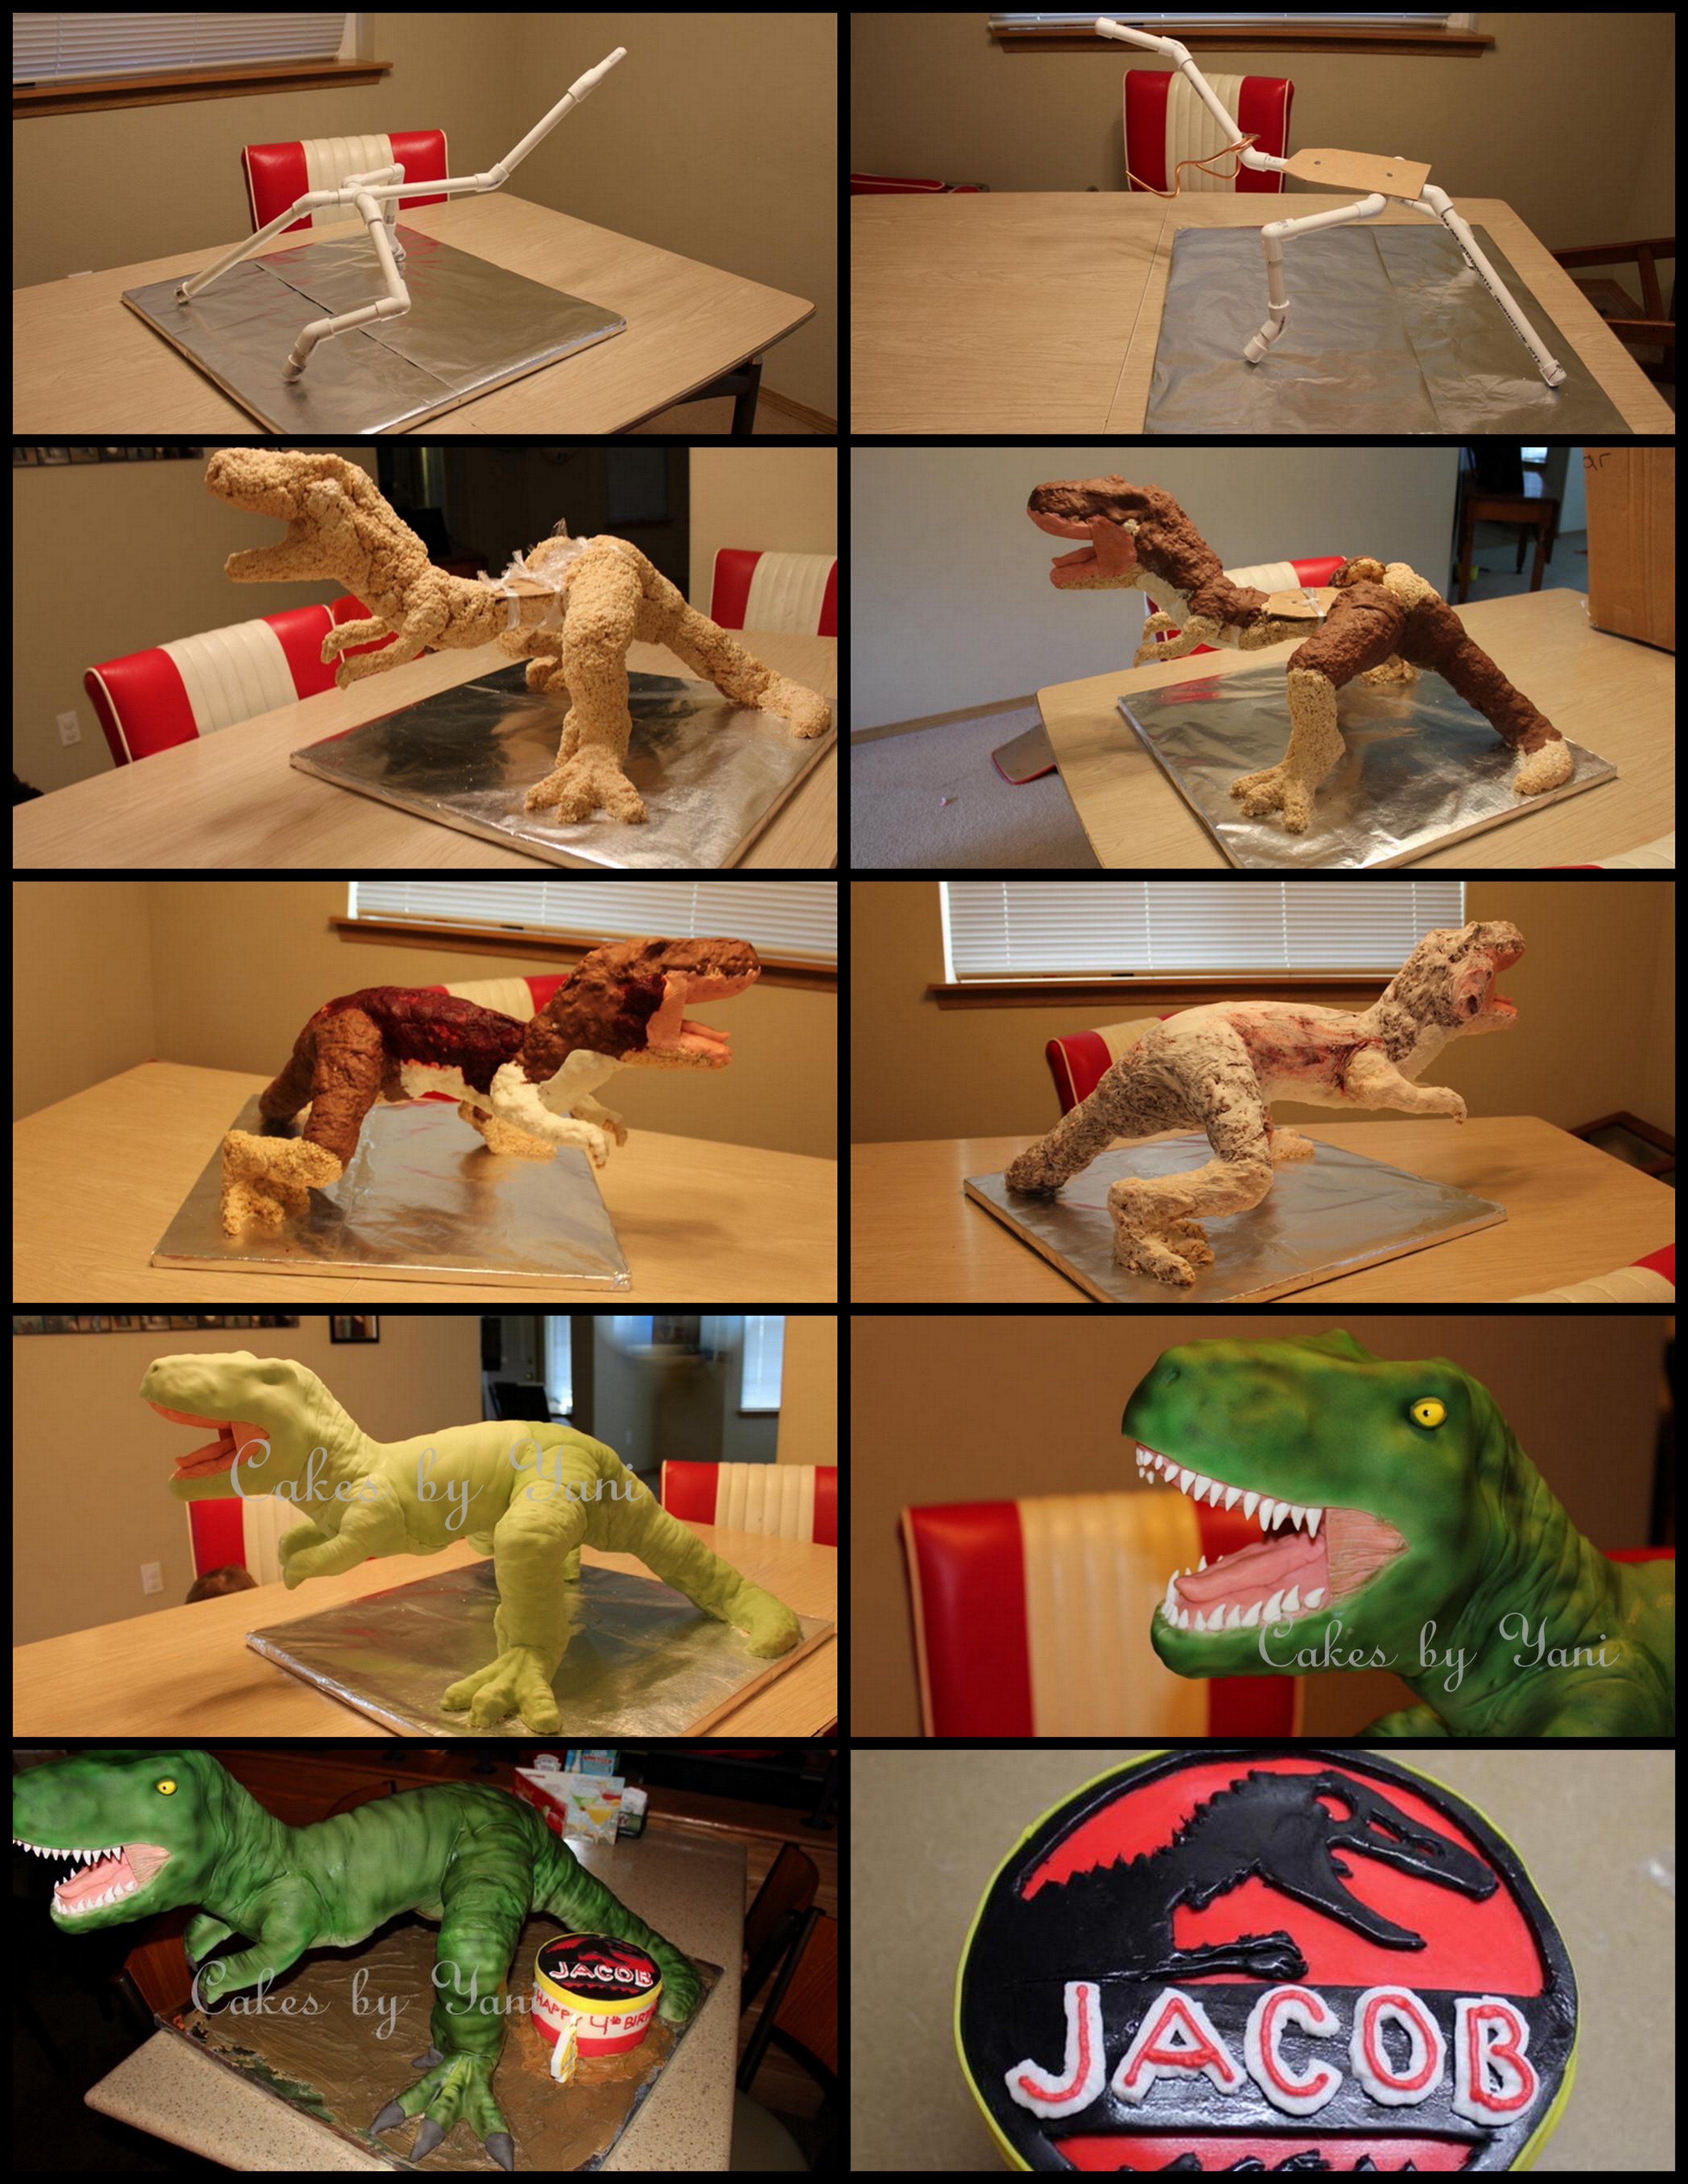 Jurassic Park Dinosaur Birthday Cake